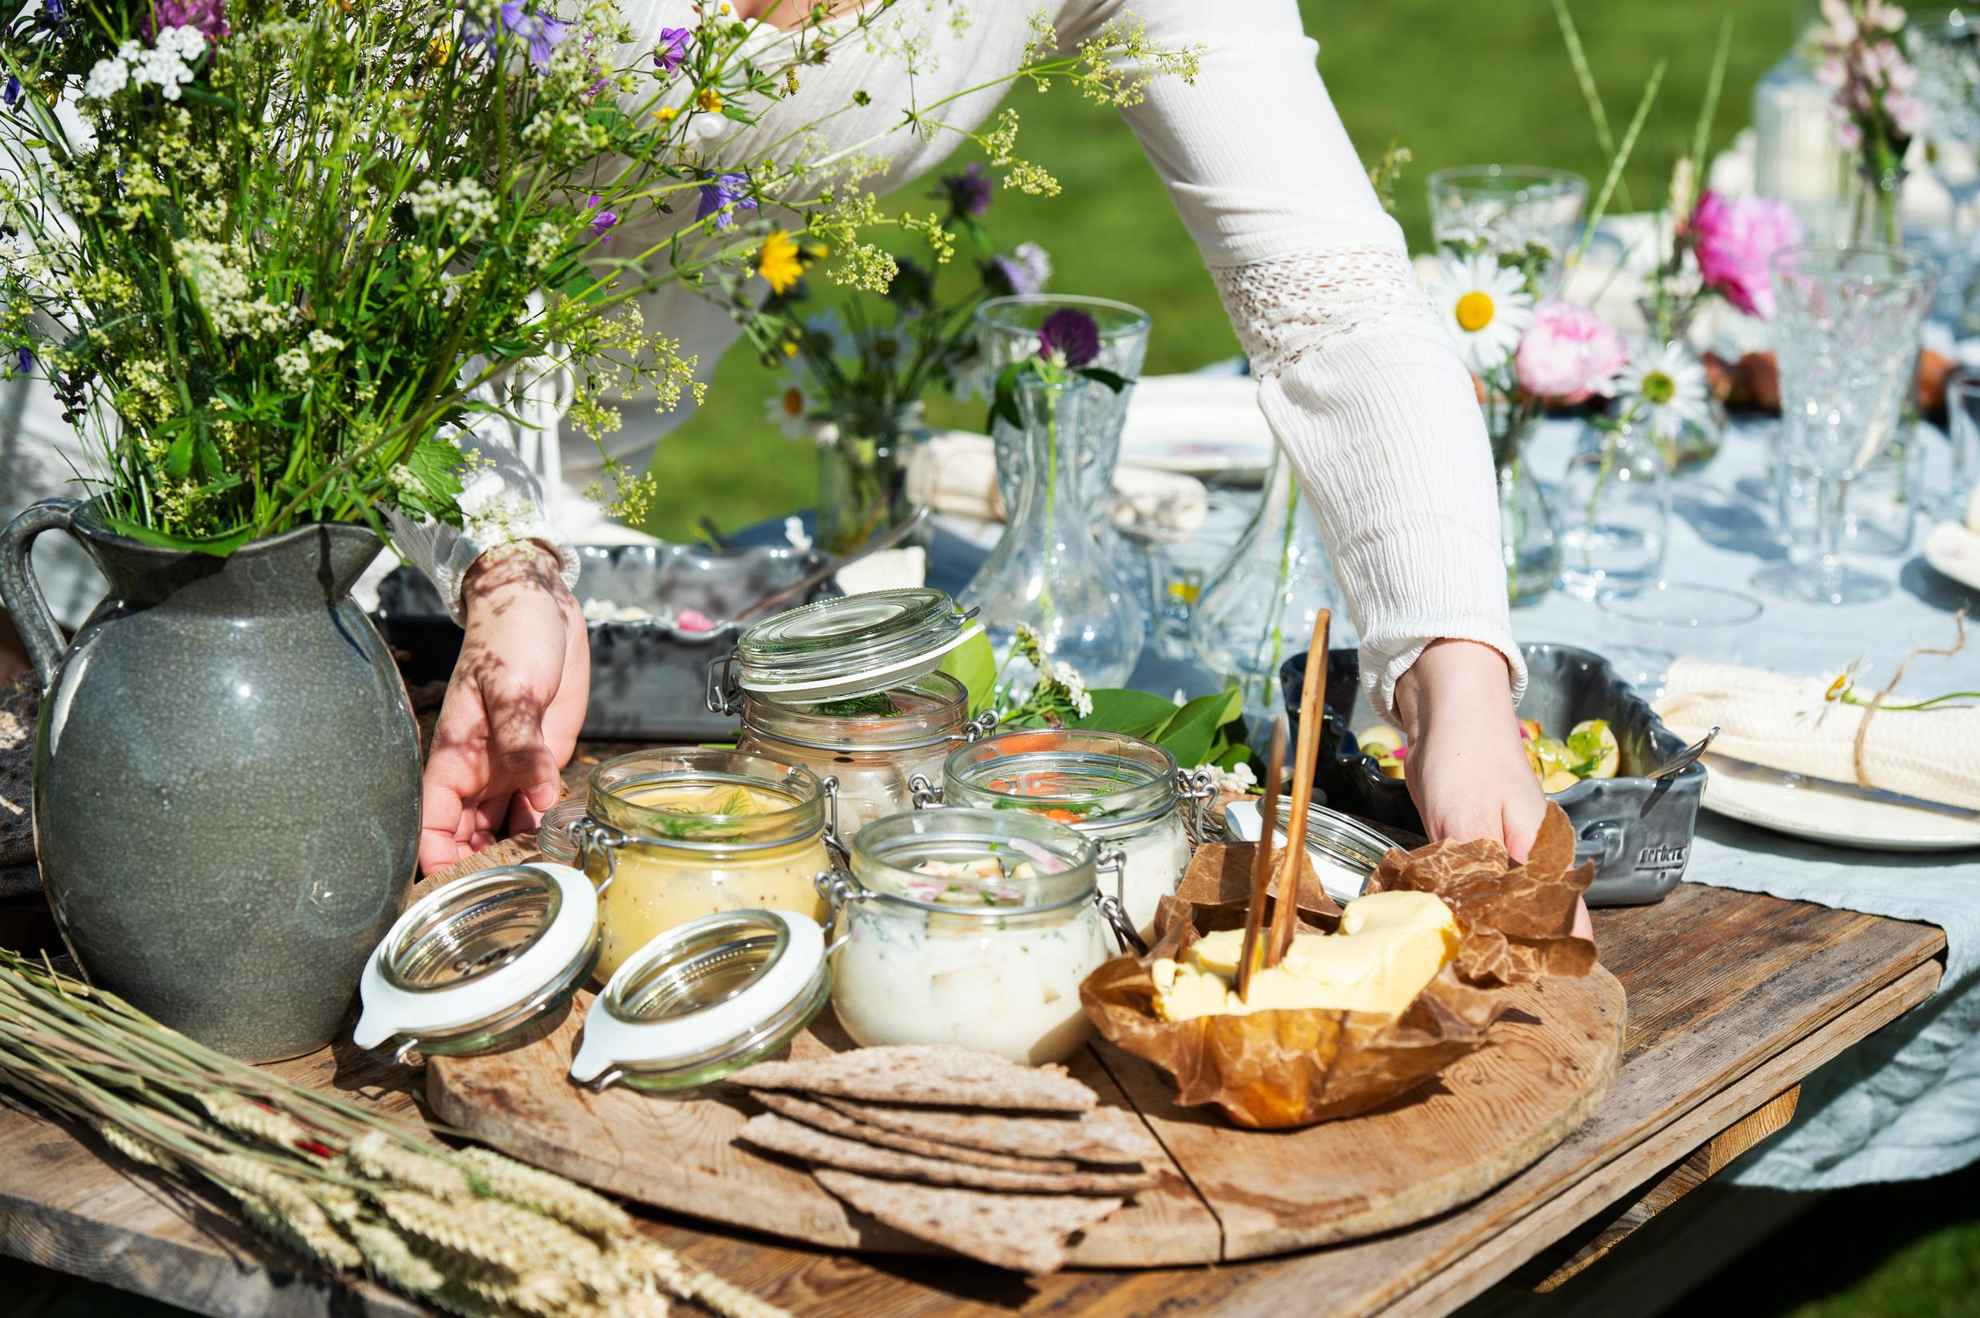 Une femme pose un plateau contenant des harengs marinés, du beurre et du pain sur une table préparée pour le déjeuner. À côté du plateau se trouve un vase avec des fleurs sauvages.